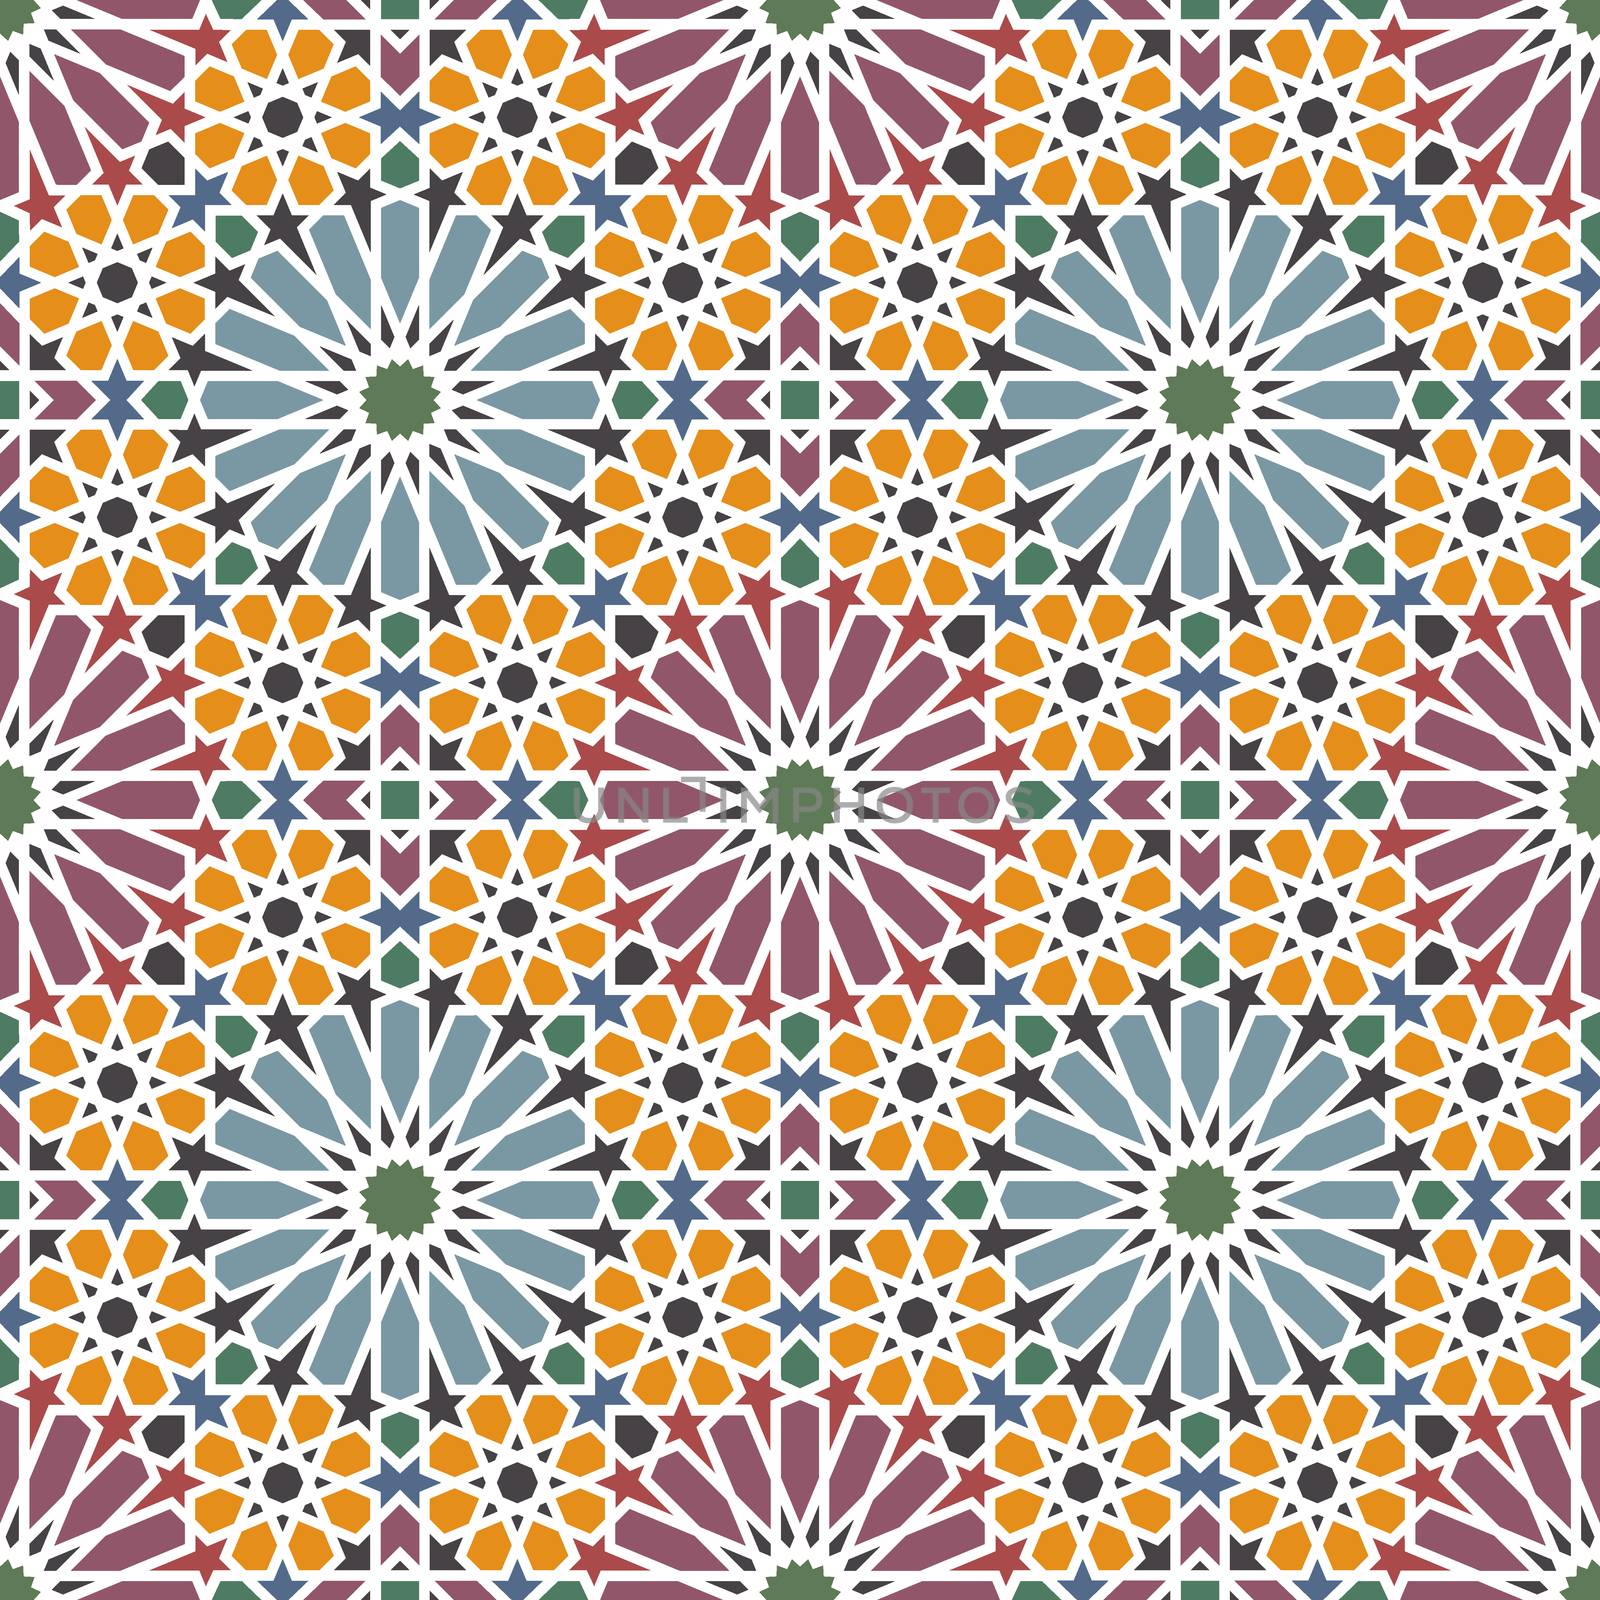 Arabic tiles by Portokalis